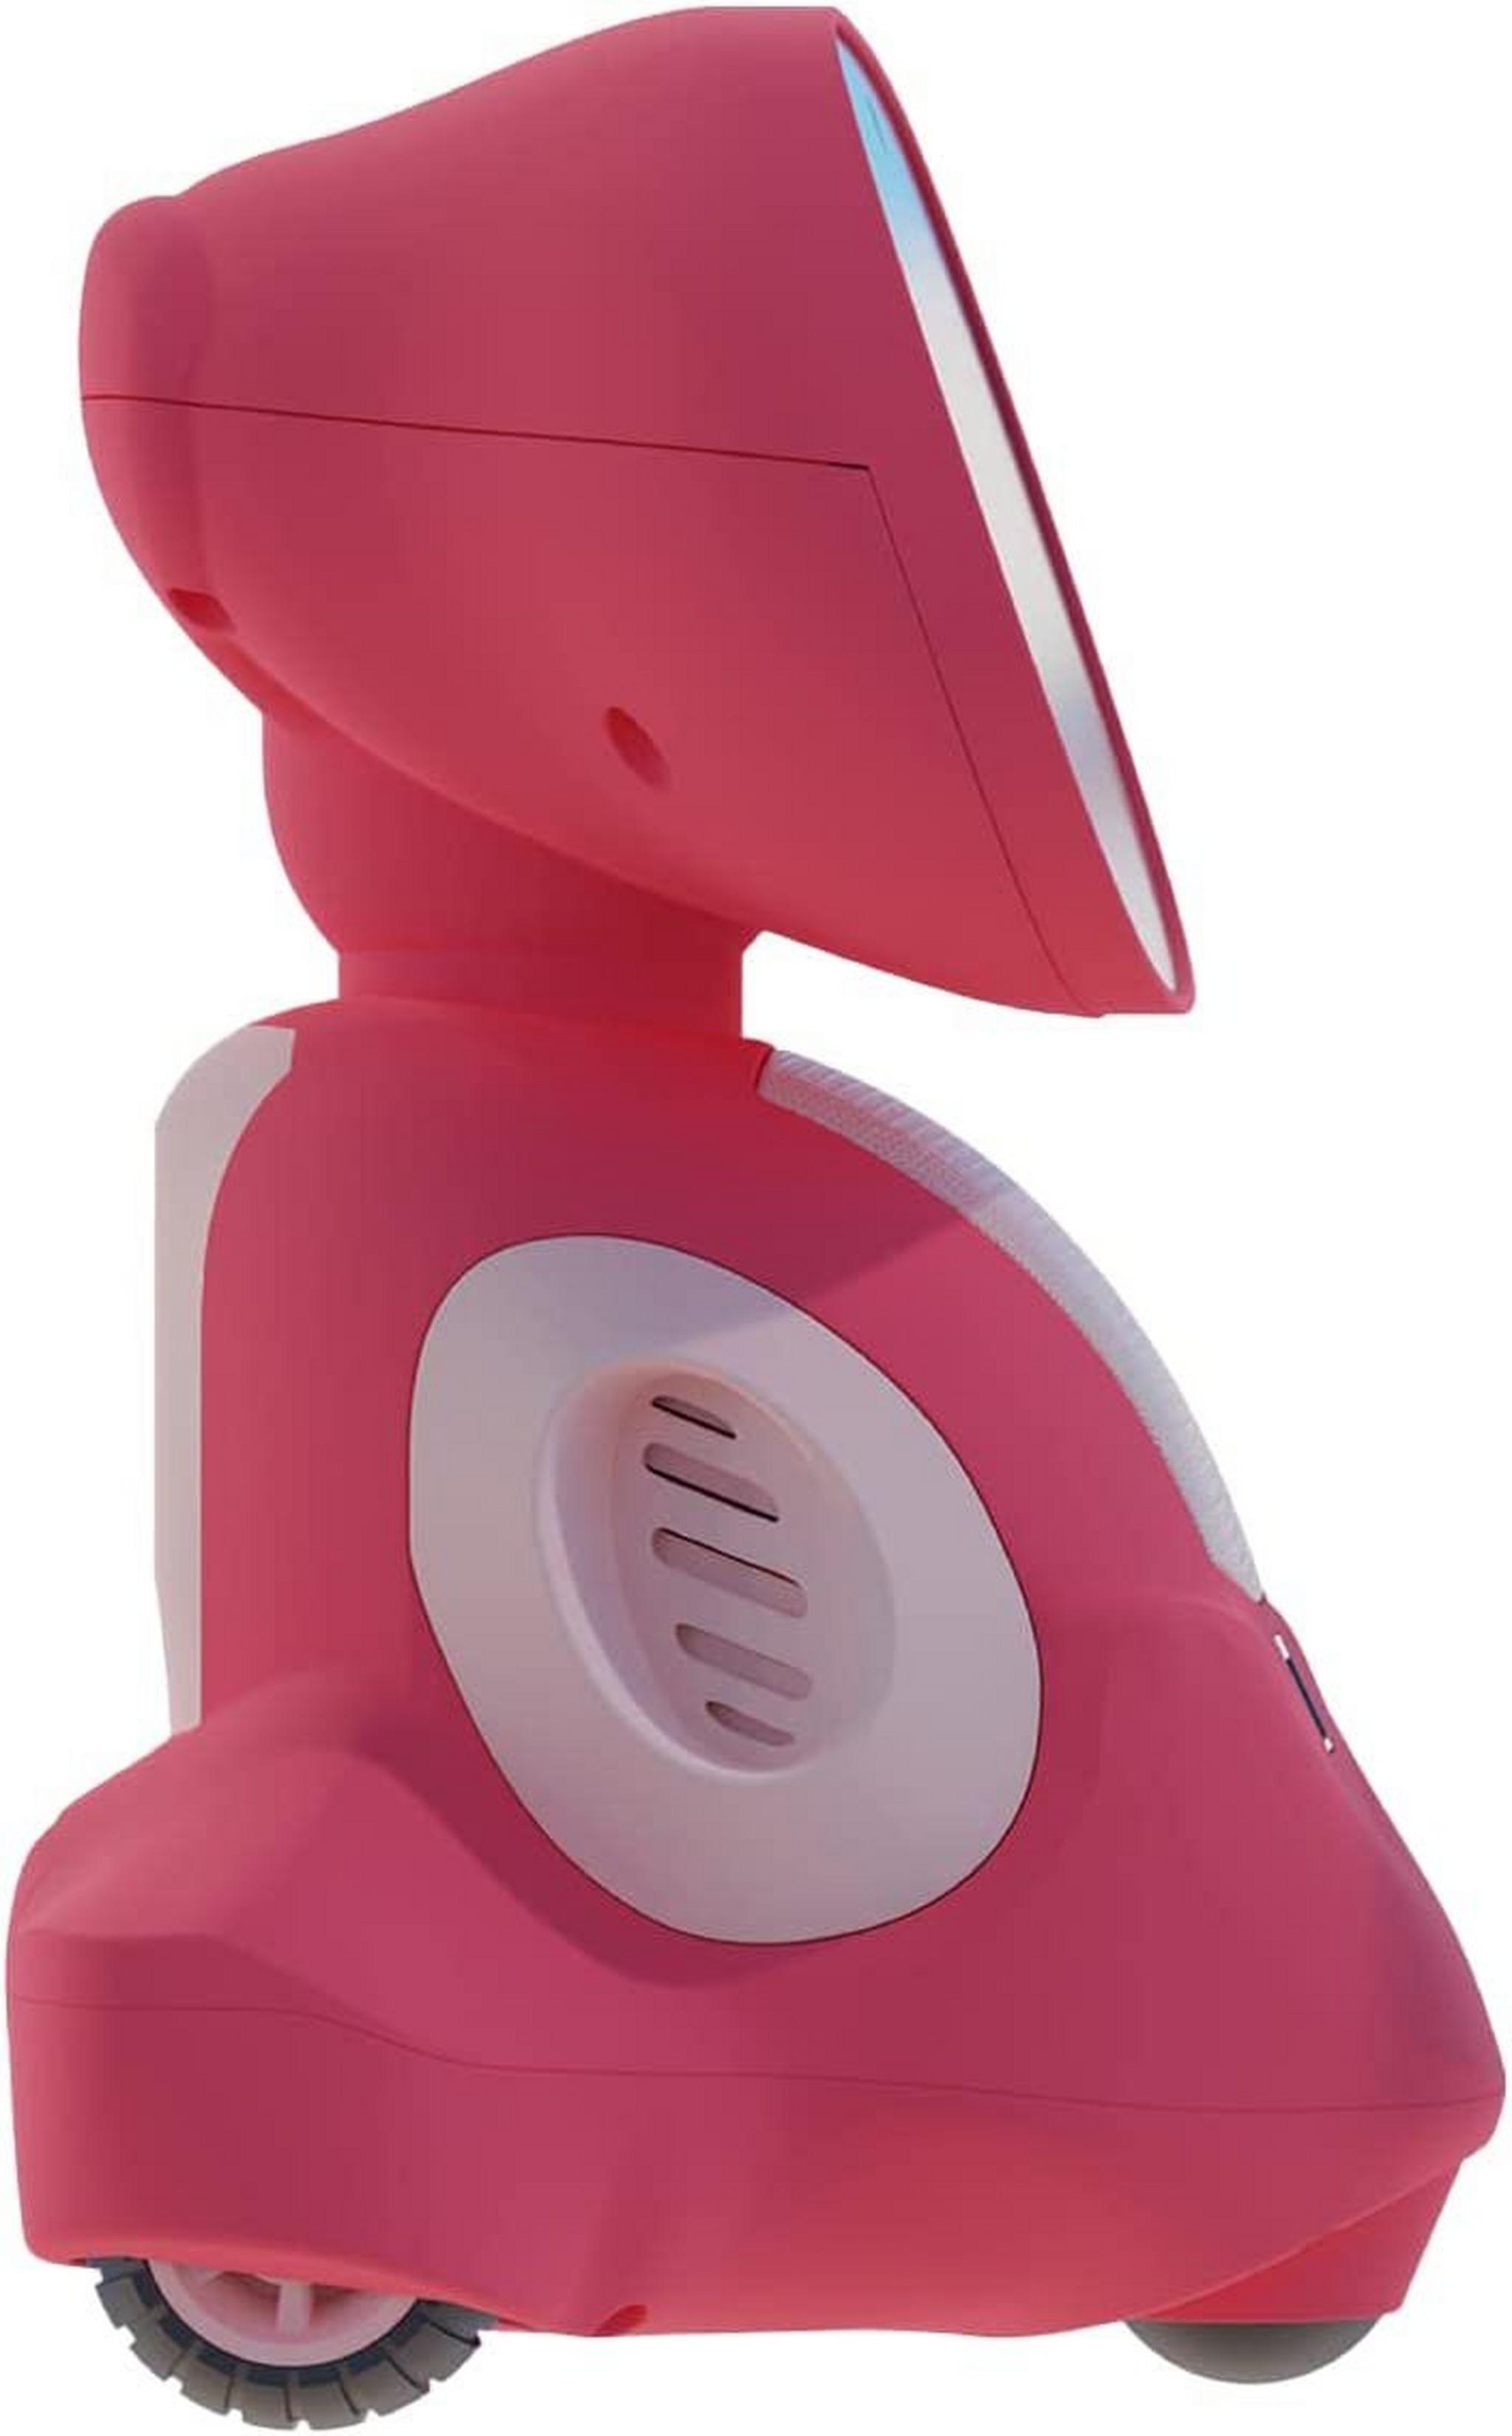 الروبوت التعليمي ميكو 3 مدعوم بالذكاء الاصطناعي - أحمر